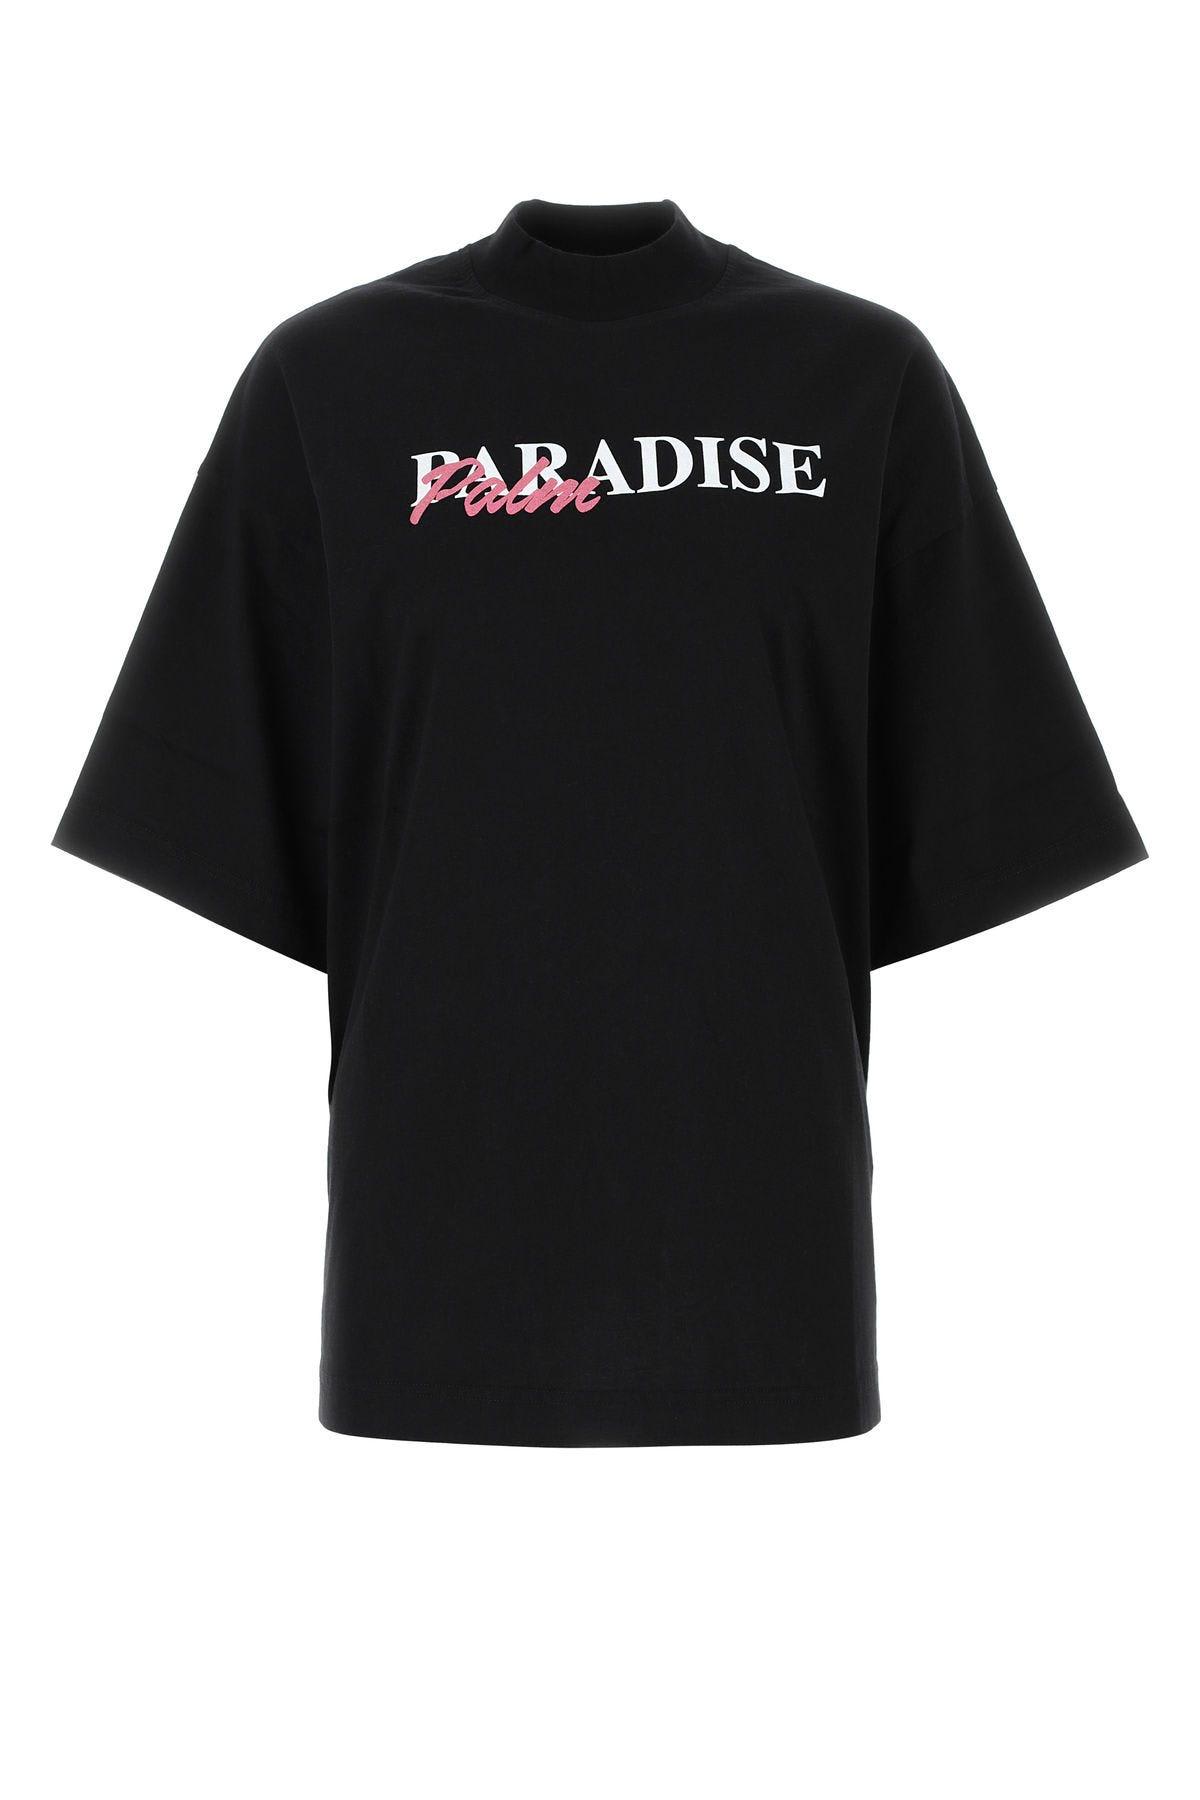 Palm Angels Black Cotton Oversize T-shirt